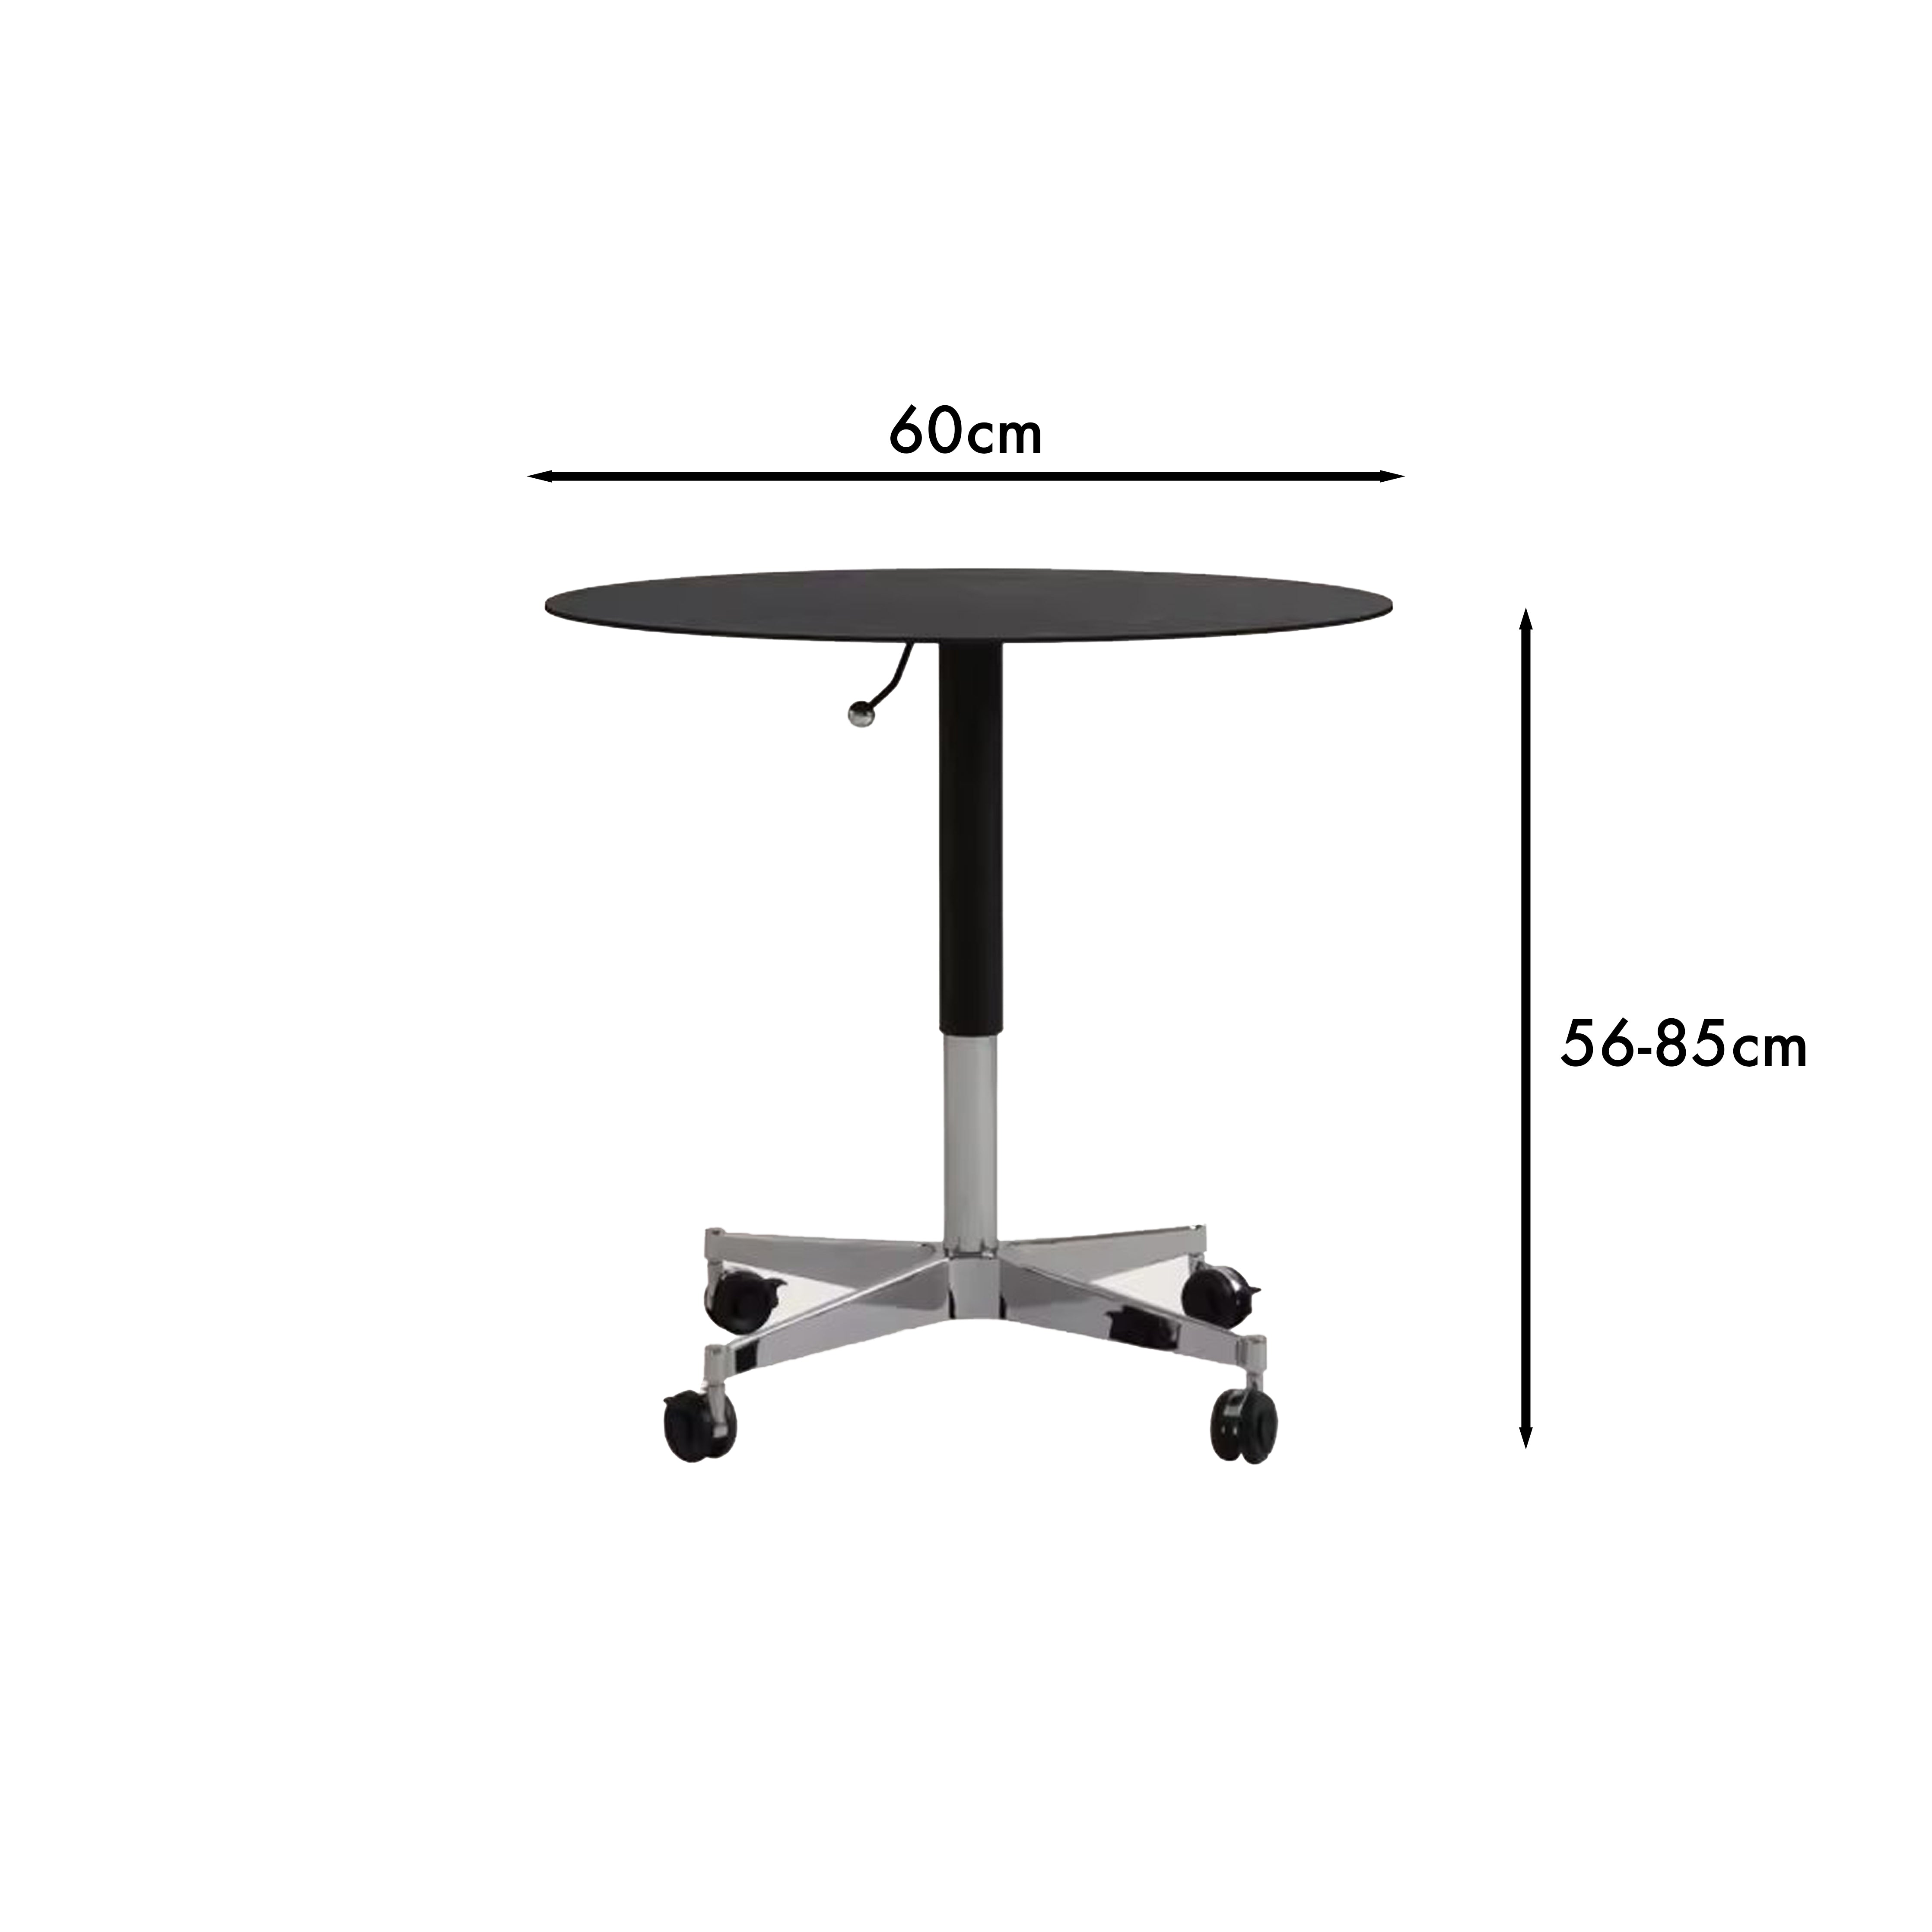 9.0 Adjustable Table